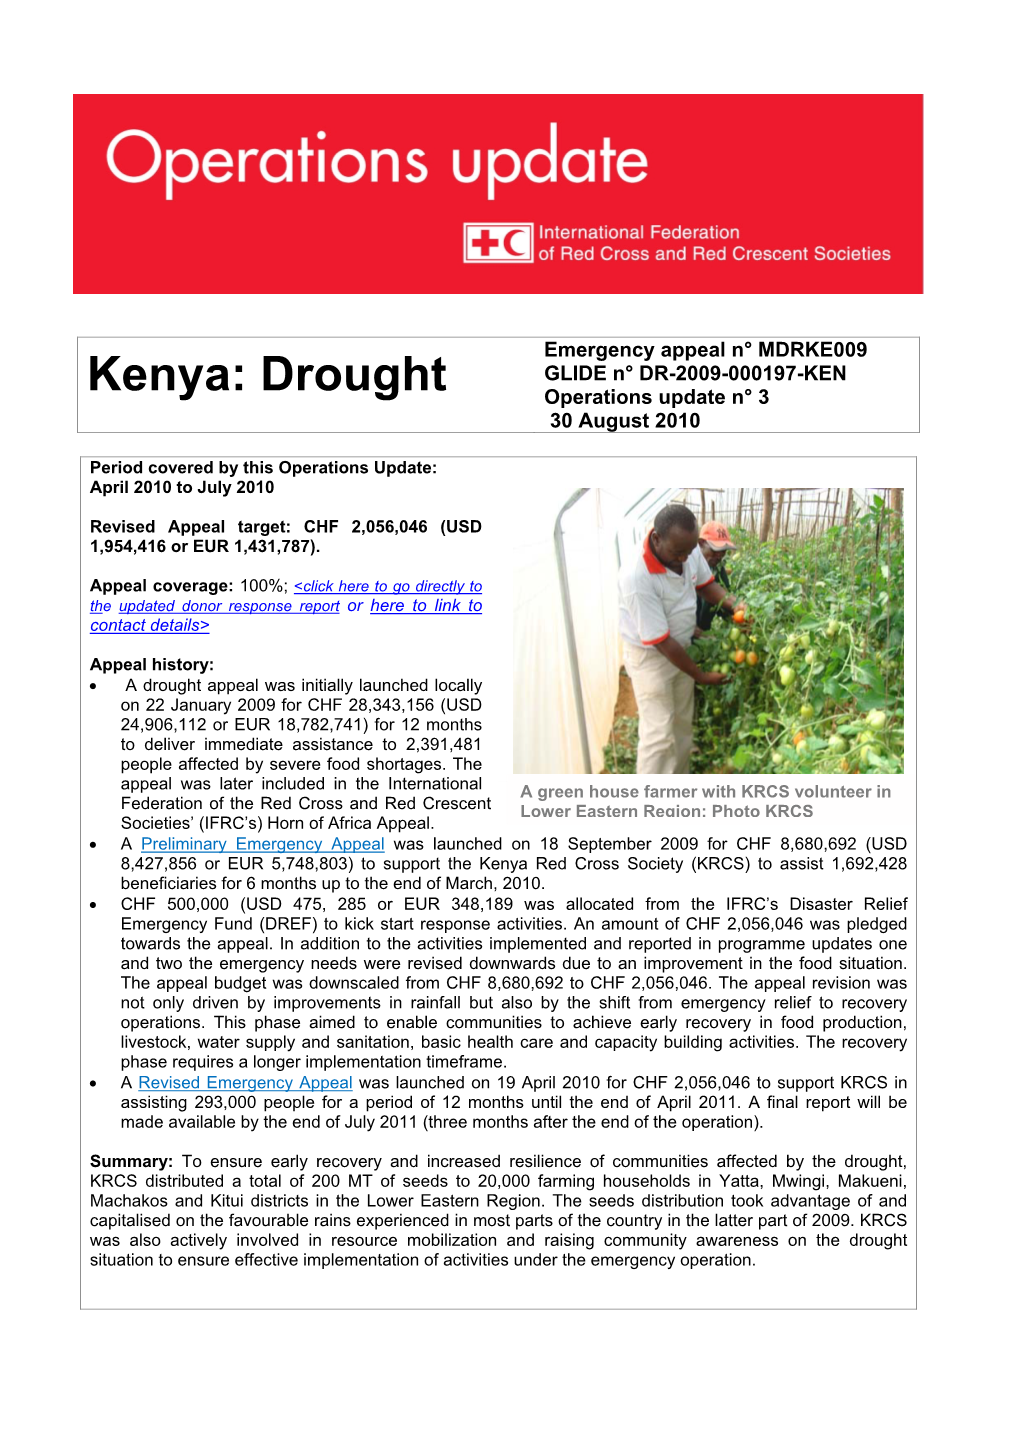 Kenya: Drought Operations Update N° 3 30 August 2010